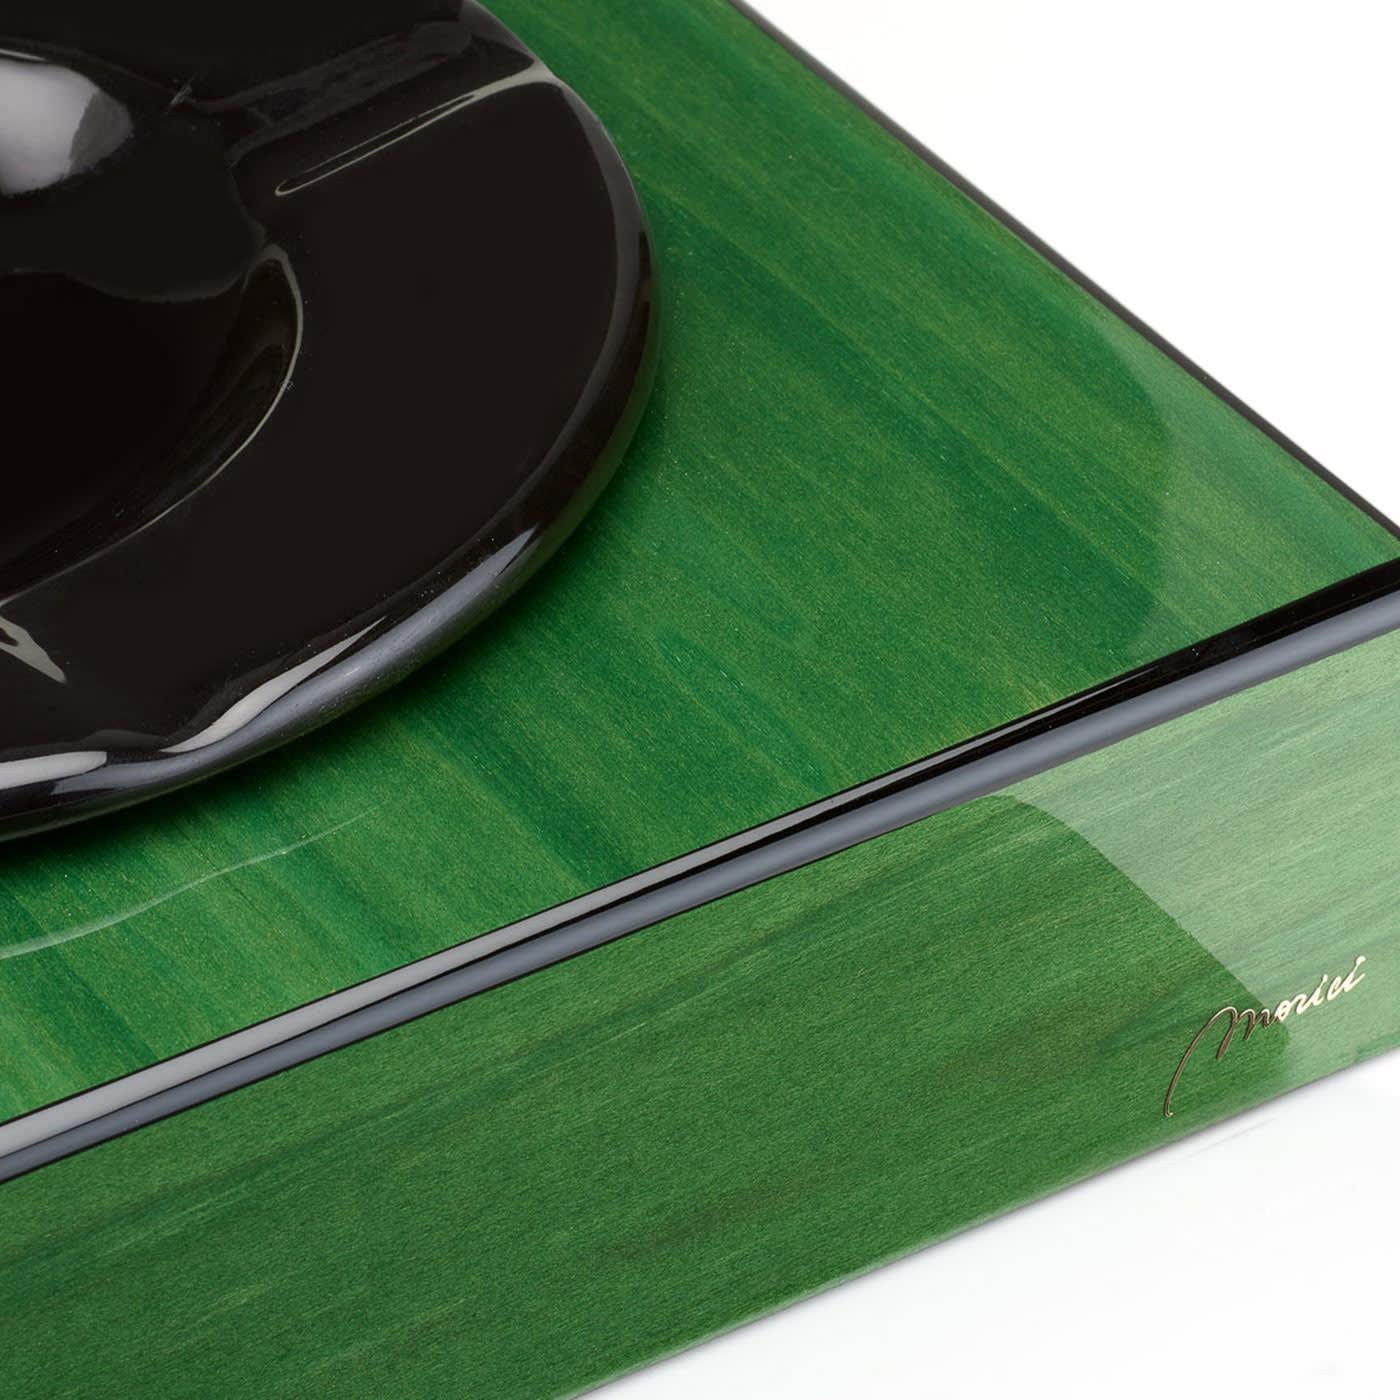 Dieser Aschenbecher, dessen natürliche Maserung durch die polierte grüne und schwarze Farbe hervorgehoben wird, die die klare und klassische Form ziert, verwandelt einen Alltagsgegenstand in ein raffiniertes Stück Inneneinrichtung. Er ist aus Holz